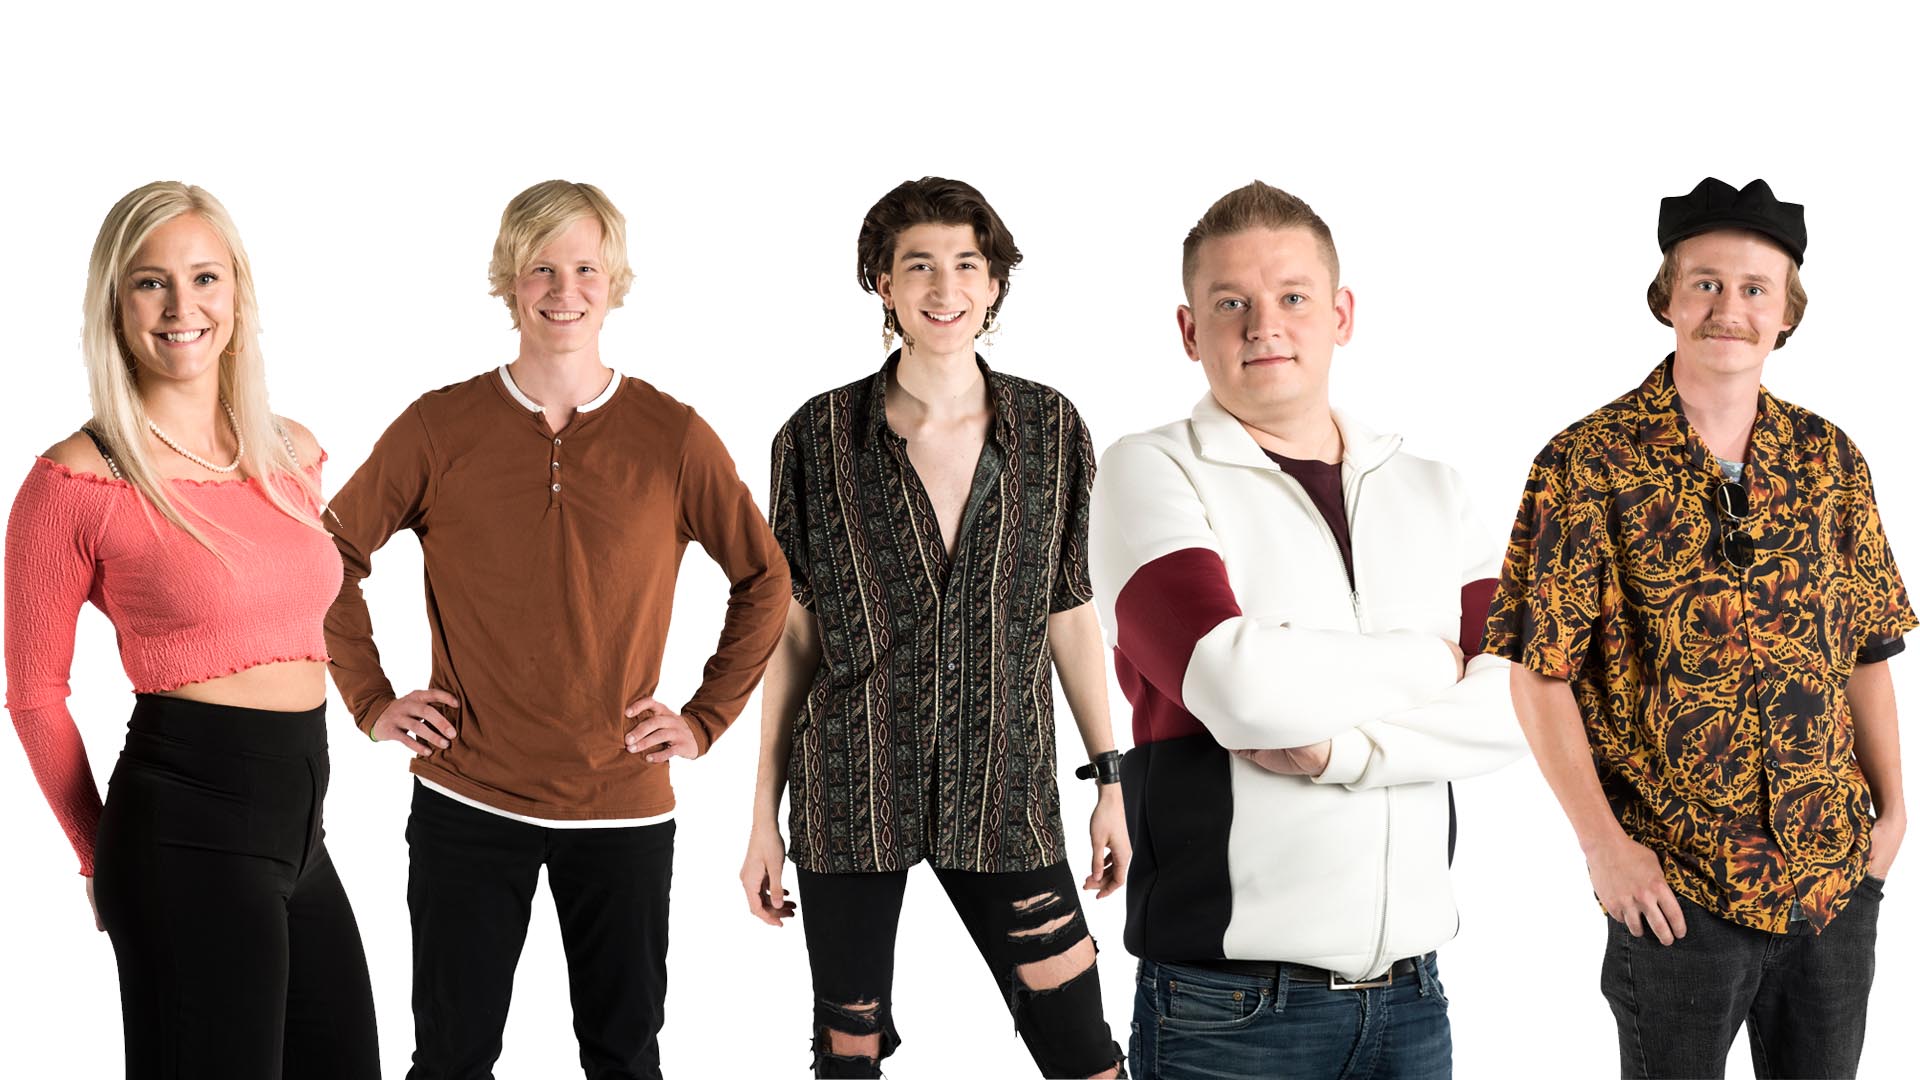 Finaaliviikon asukkaat vasemmalta lukien: Anu, Helmeri, Kevin, Kimmo ja Kristian. Kuvat: © 2019 Petri Mast / Nelonen Media.